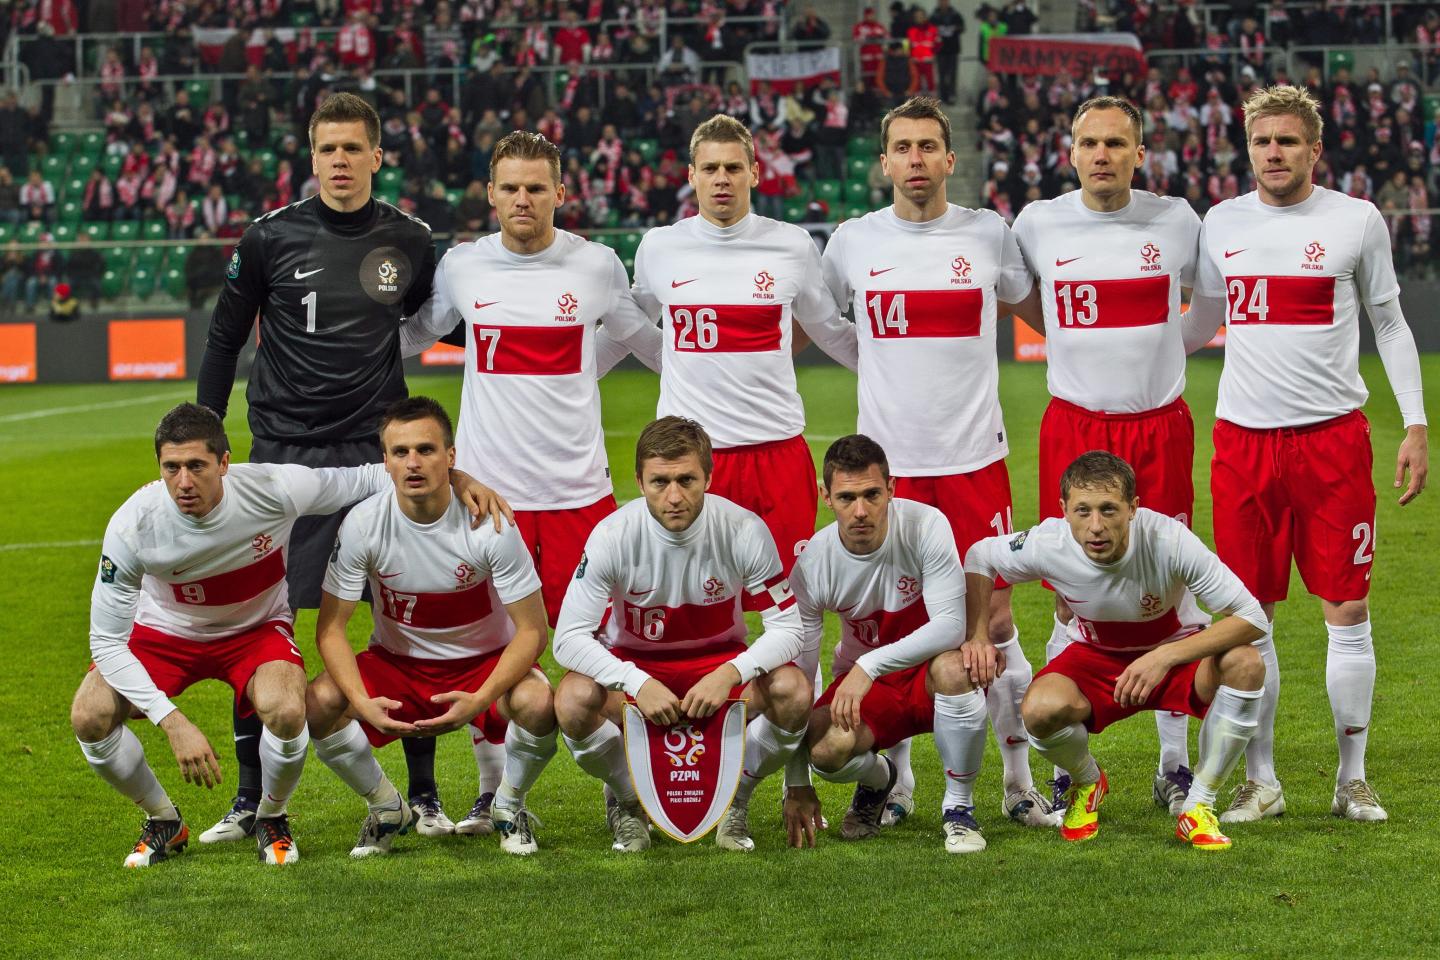 Reprezentacja Polski przed towarzyskim meczem z Włochami w 2011 roku. Polacy w koszulkach bez orzełka.